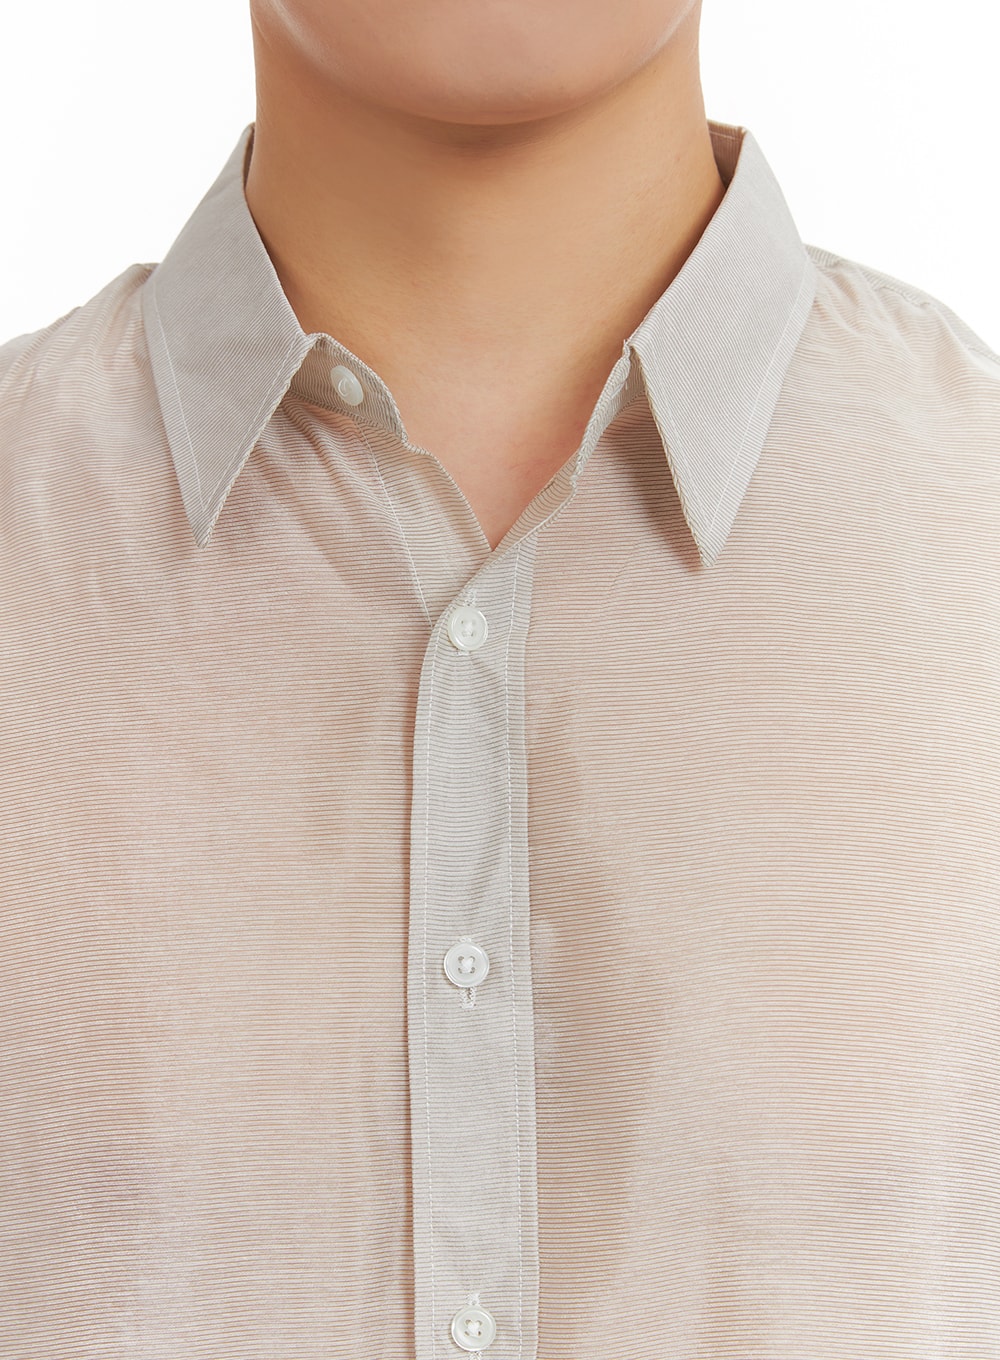 mens-semi-sheer-button-shirt-ia402